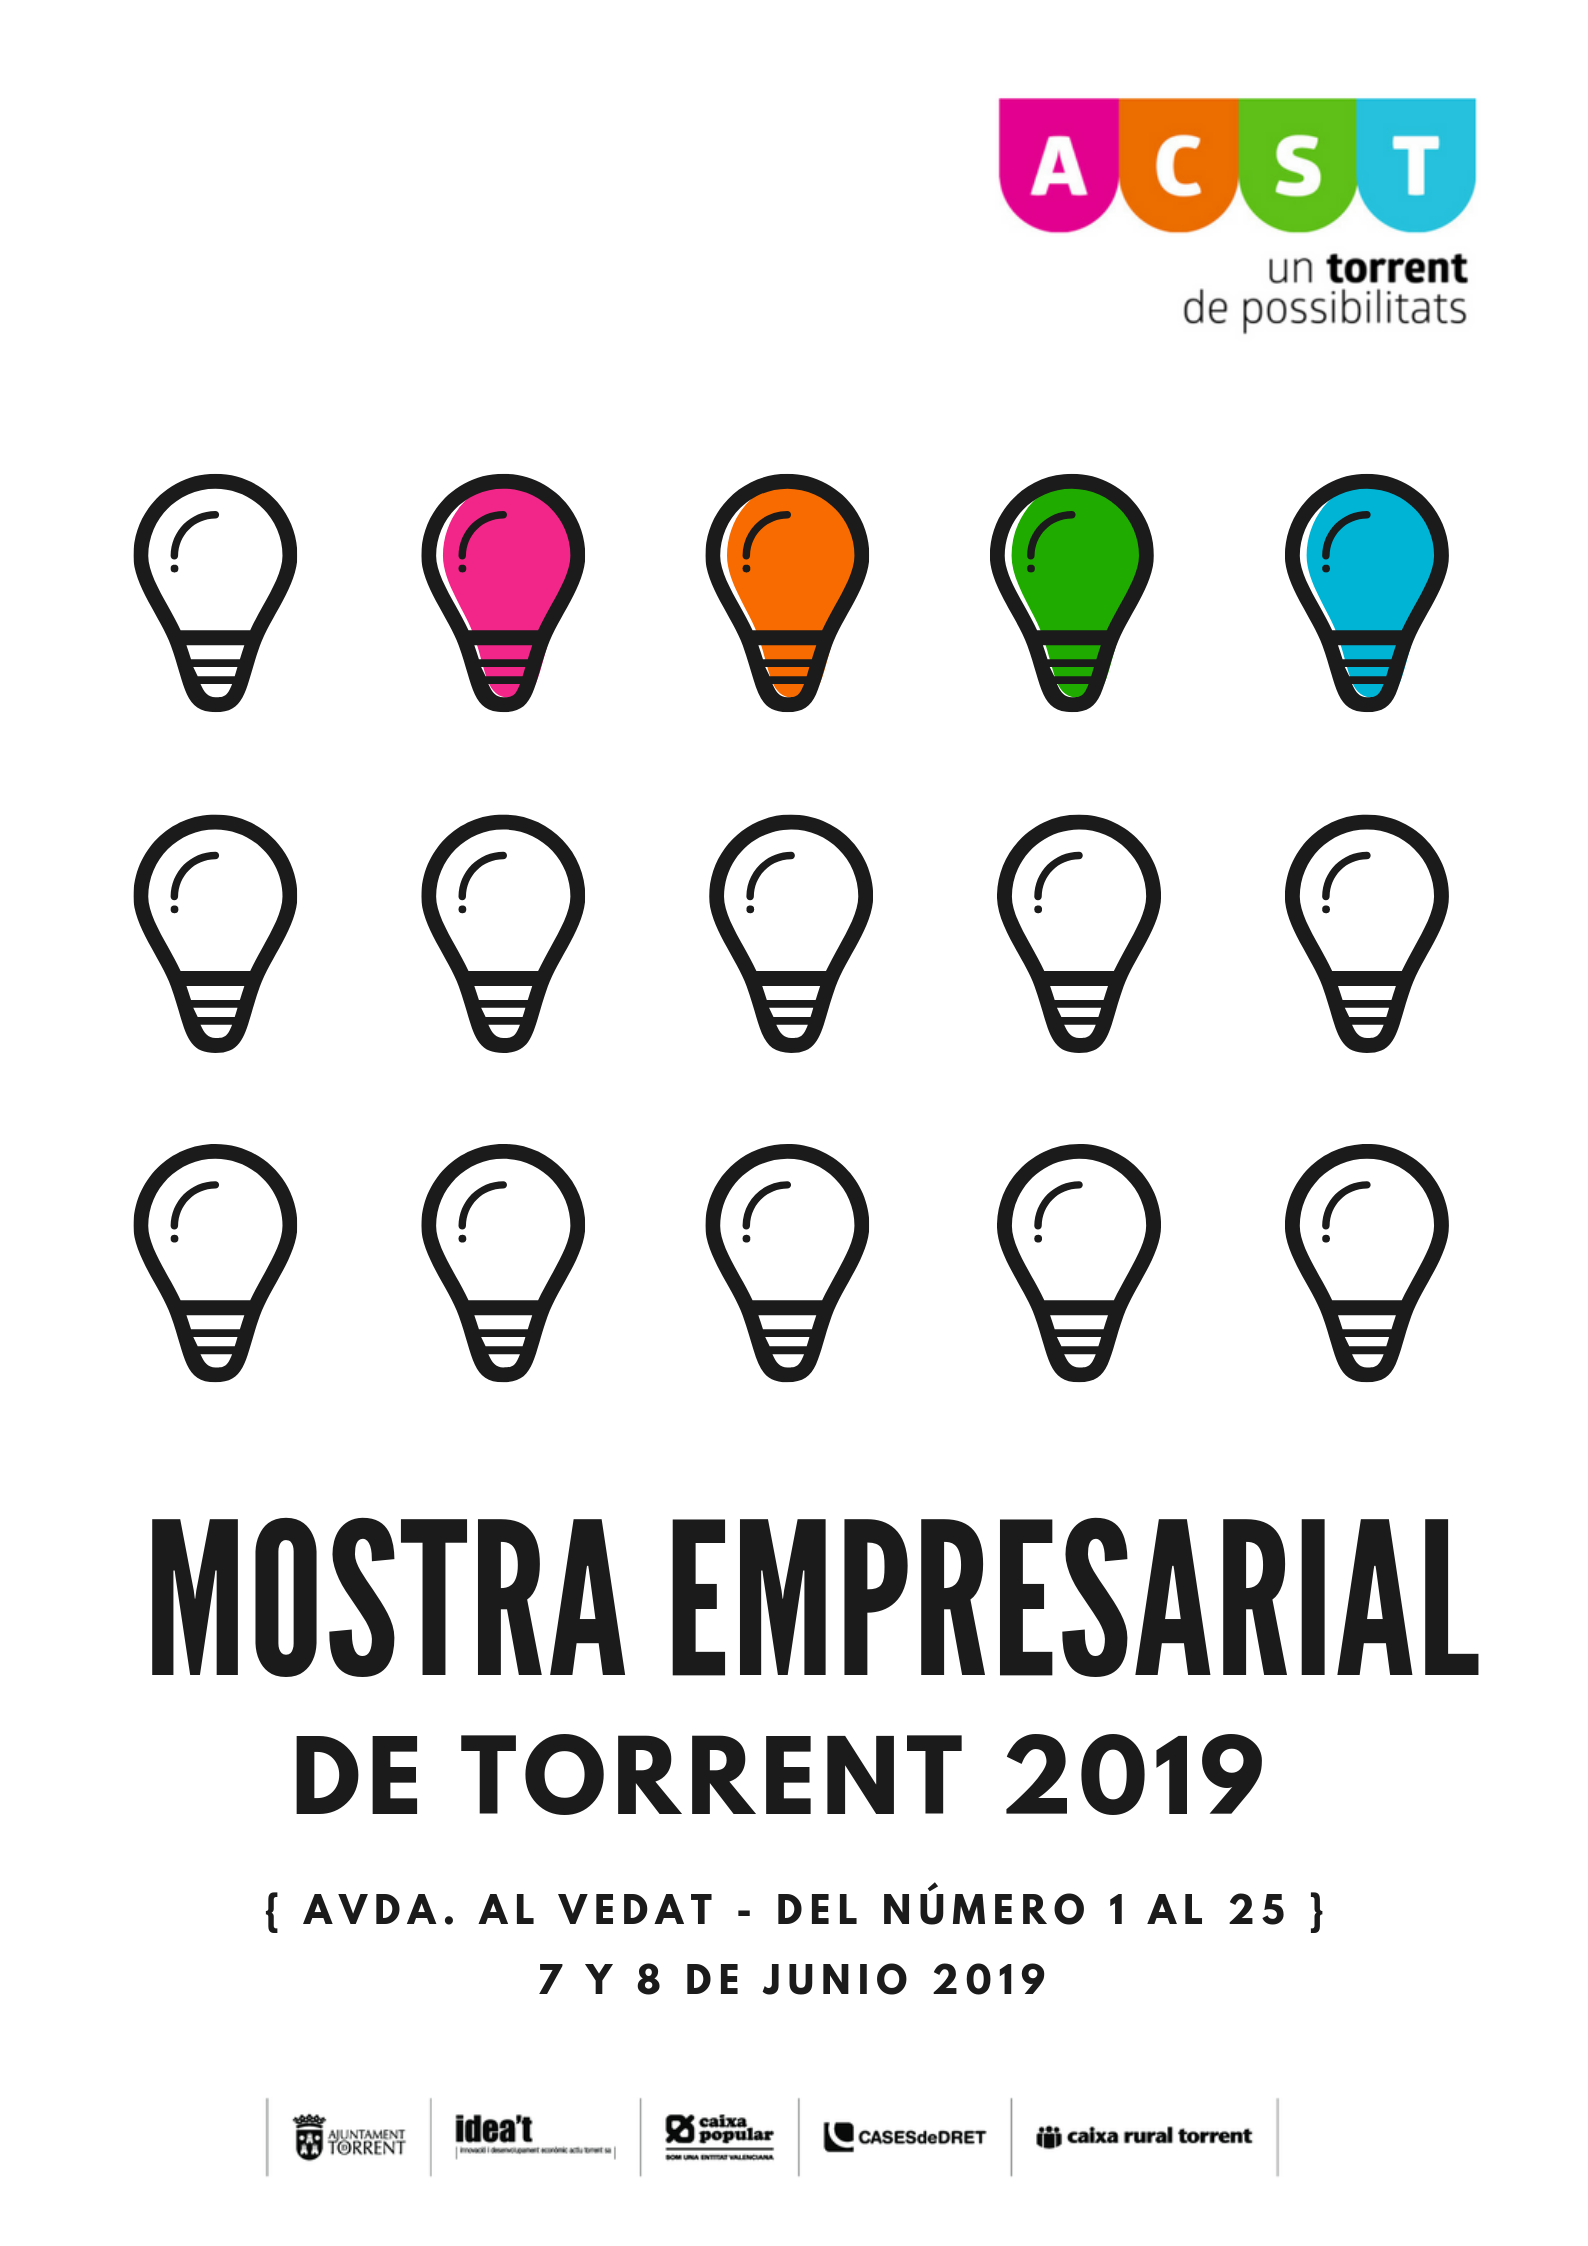 Mostra Empresarial de Torrent 2019